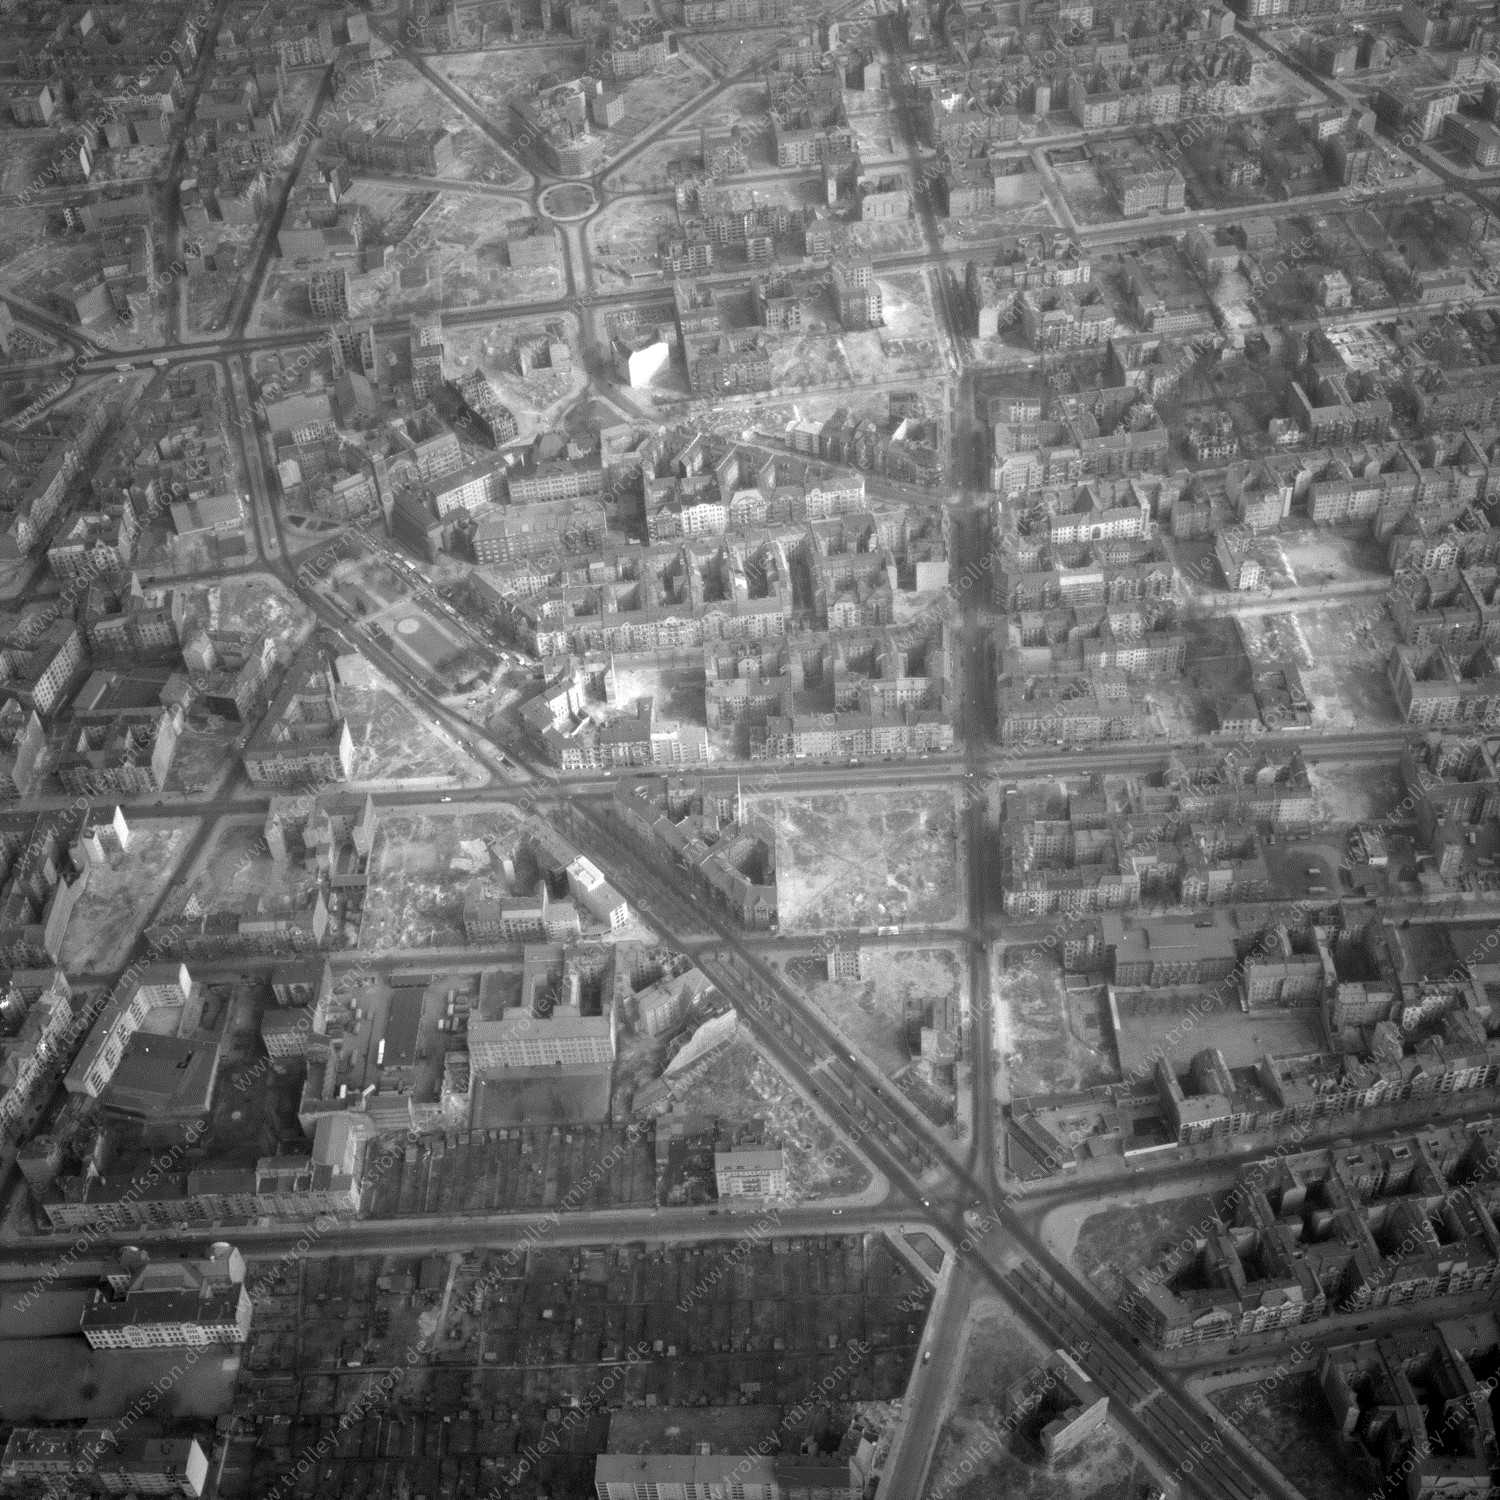 Alte Fotos und Luftbilder von Berlin - Luftbildaufnahme Nr. 06 - Historische Luftaufnahmen von West-Berlin aus dem Jahr 1954 - Flugstrecke Delta